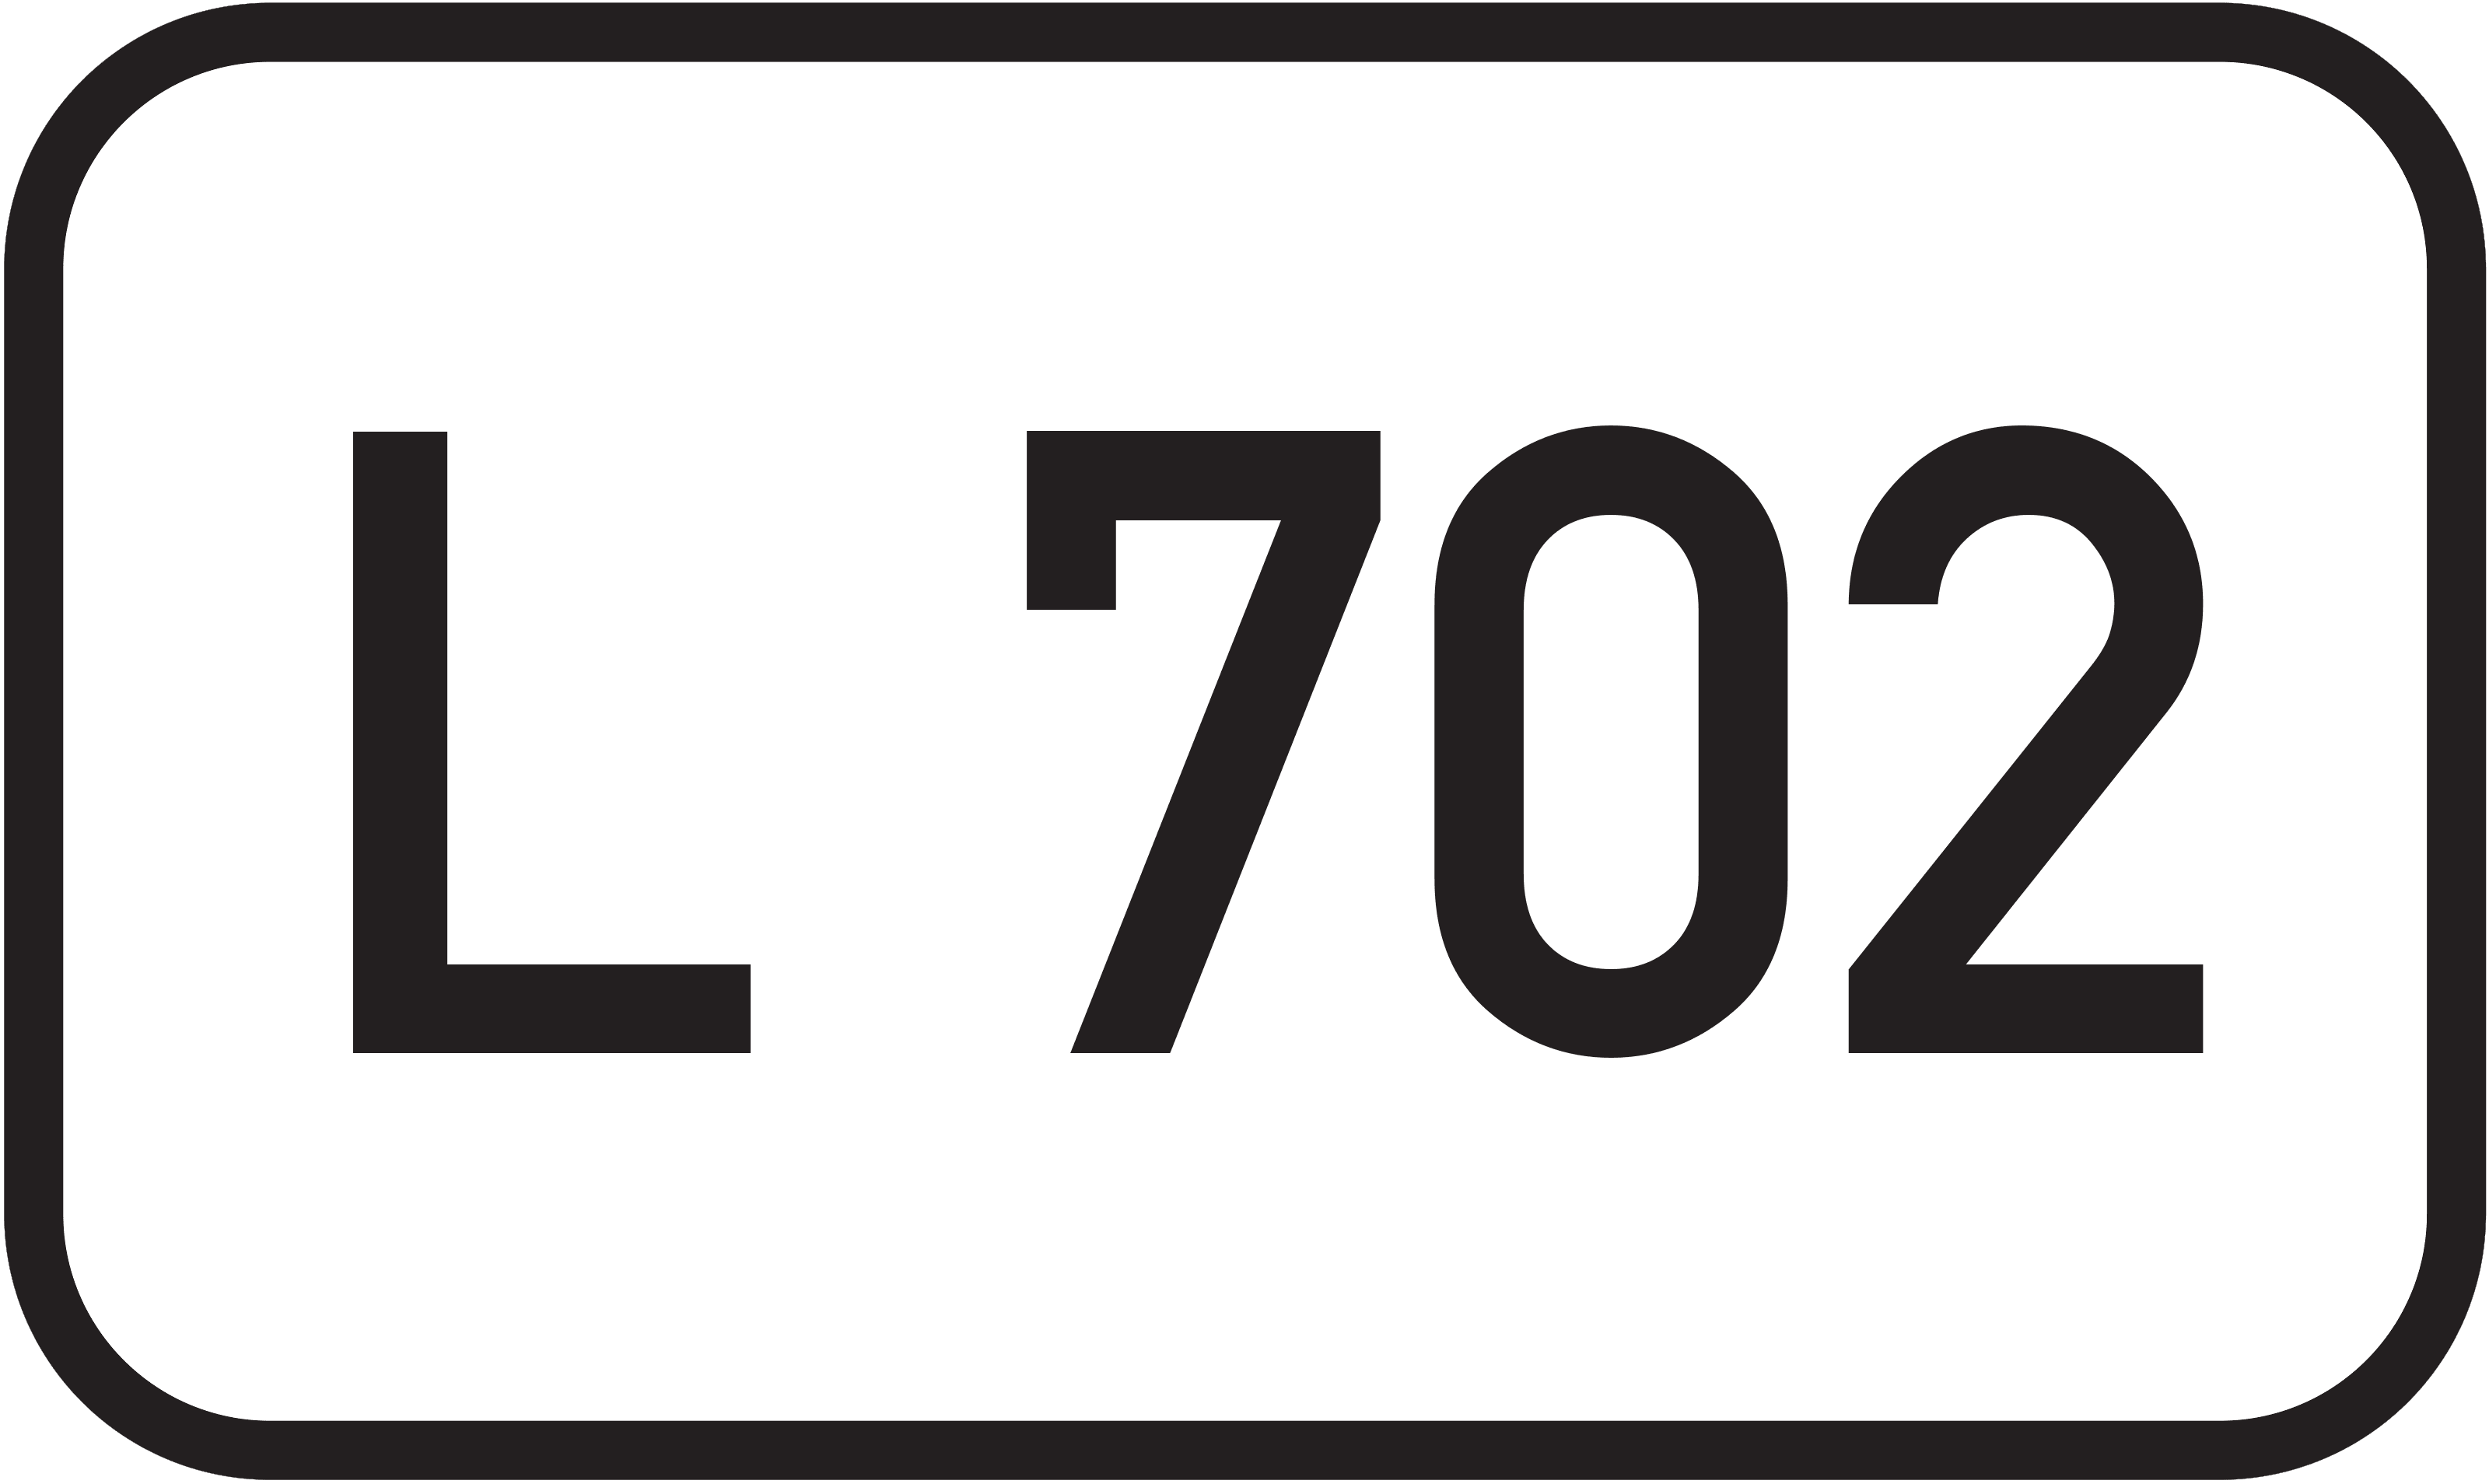 Landesstraße L 702